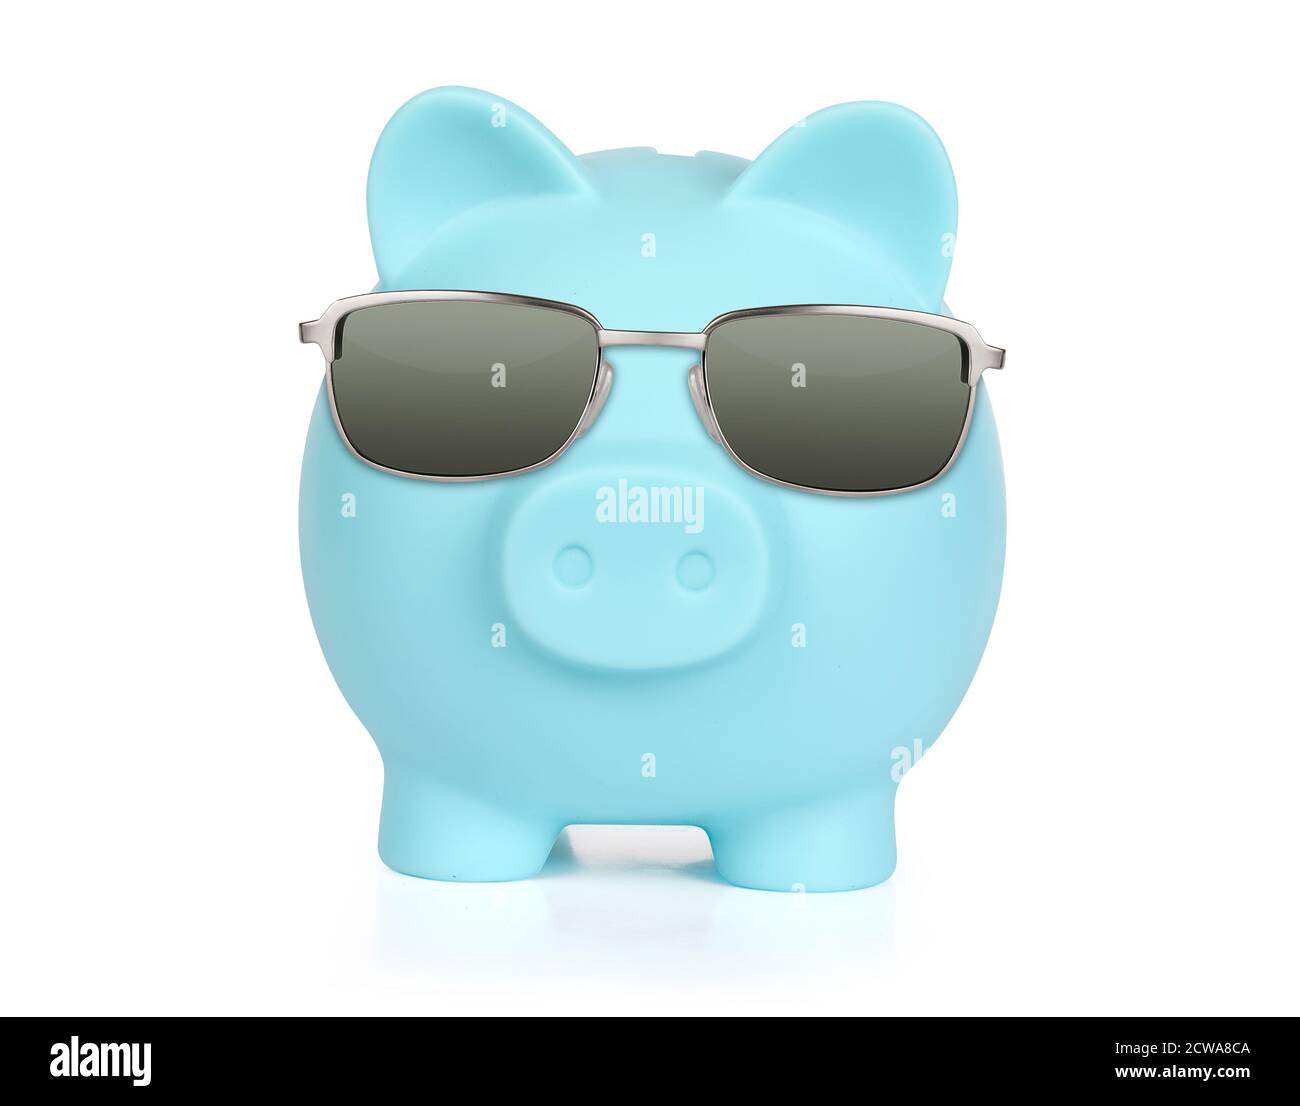 Cochon à lunettes de soleil Banque d'images détourées - Alamy